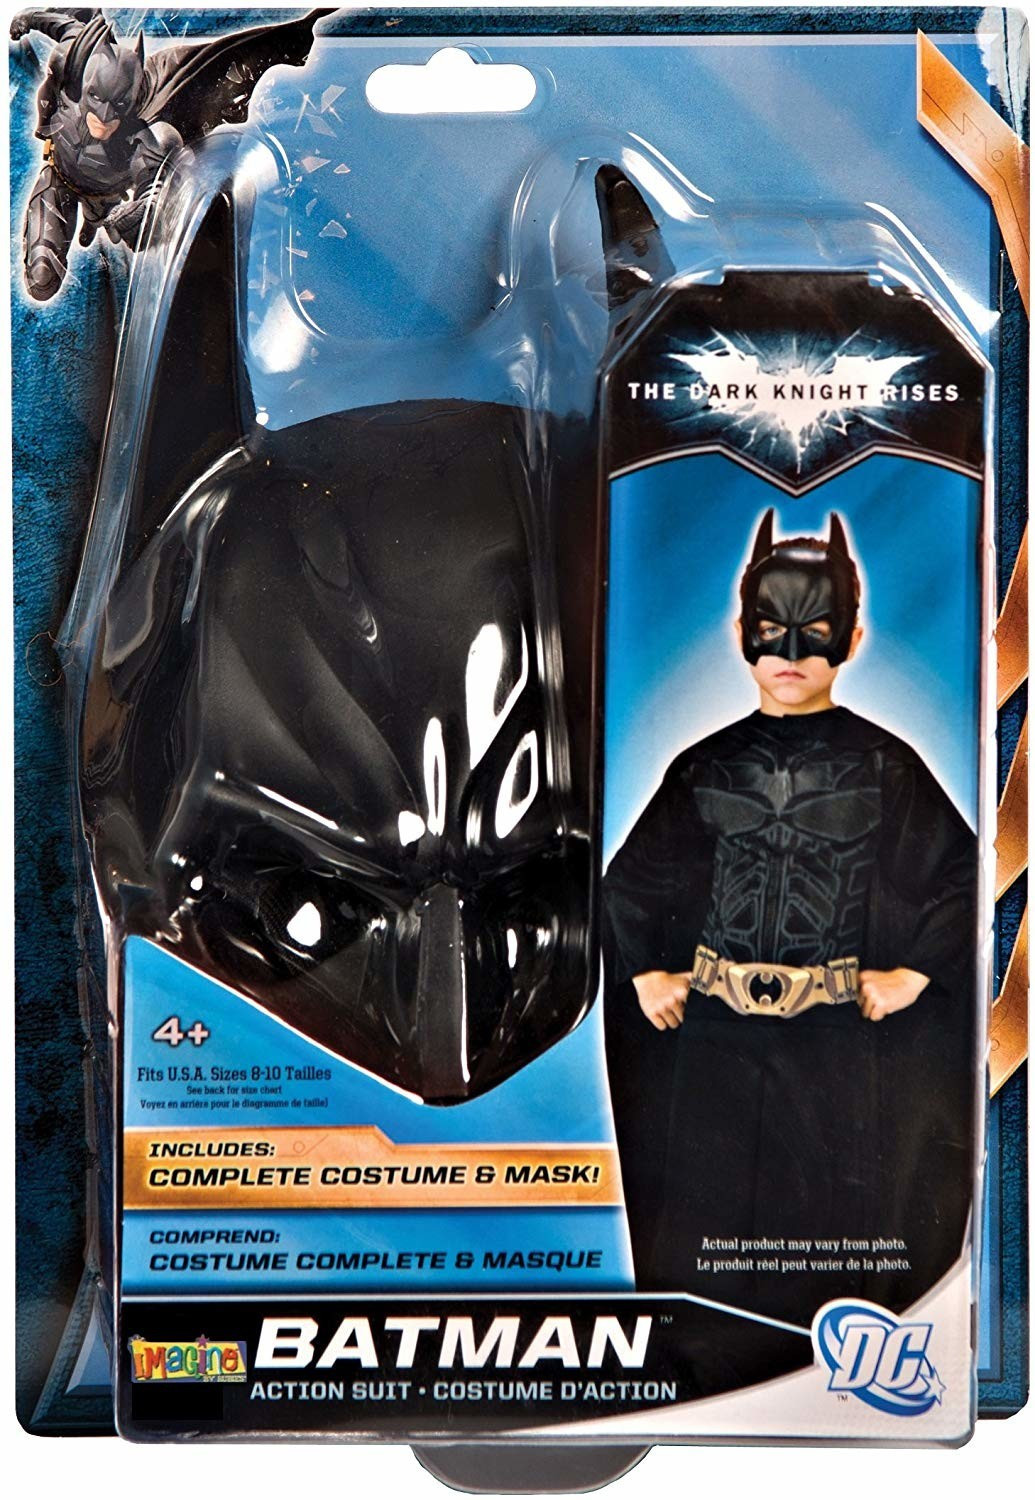 Déguisement Batman de luxe pour enfant - RUBIE'S - Batman - Noir - 3 ans